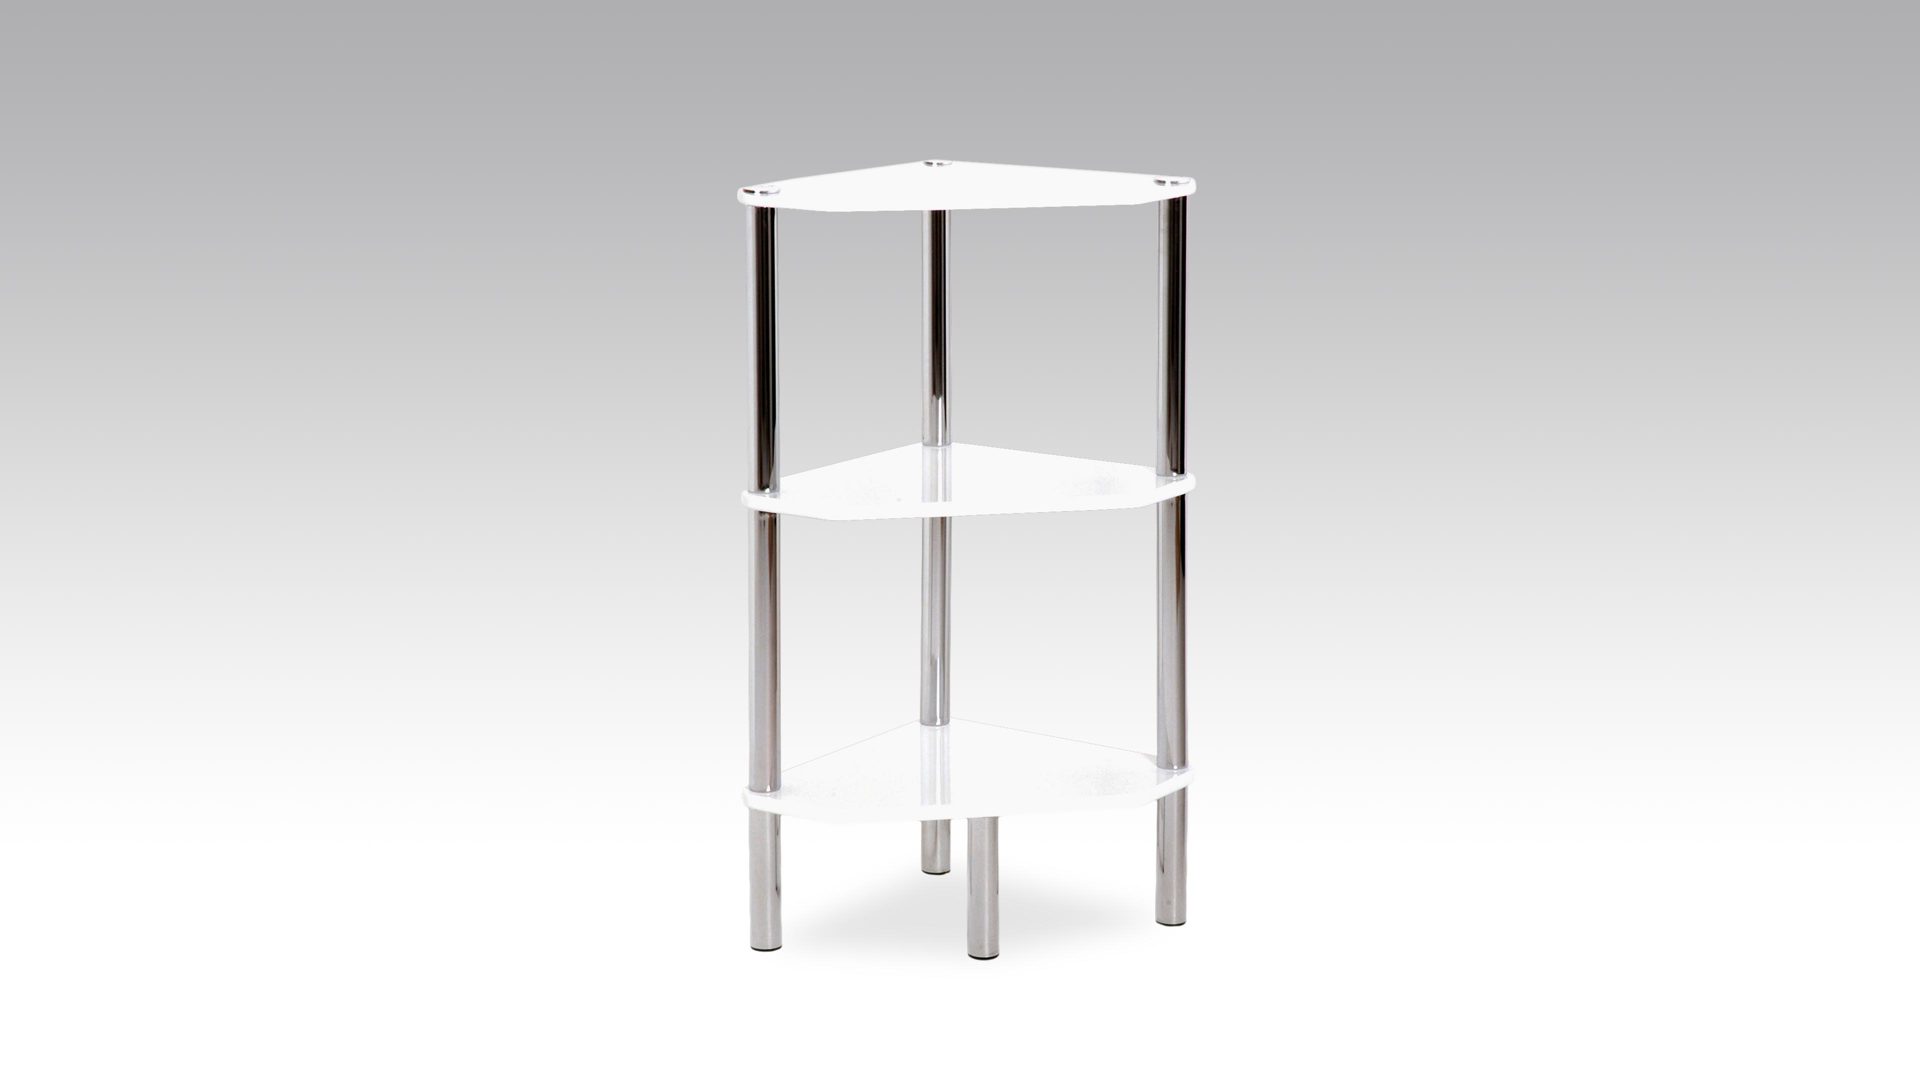 Eckregal Haku aus MDF Metall in Weiß Eckregal, ein Kleinmöbel für moderne Wohnlandschaften weiße Kunststoffoberfläche & Chrom - drei Böden, Höhe ca. 77 cm